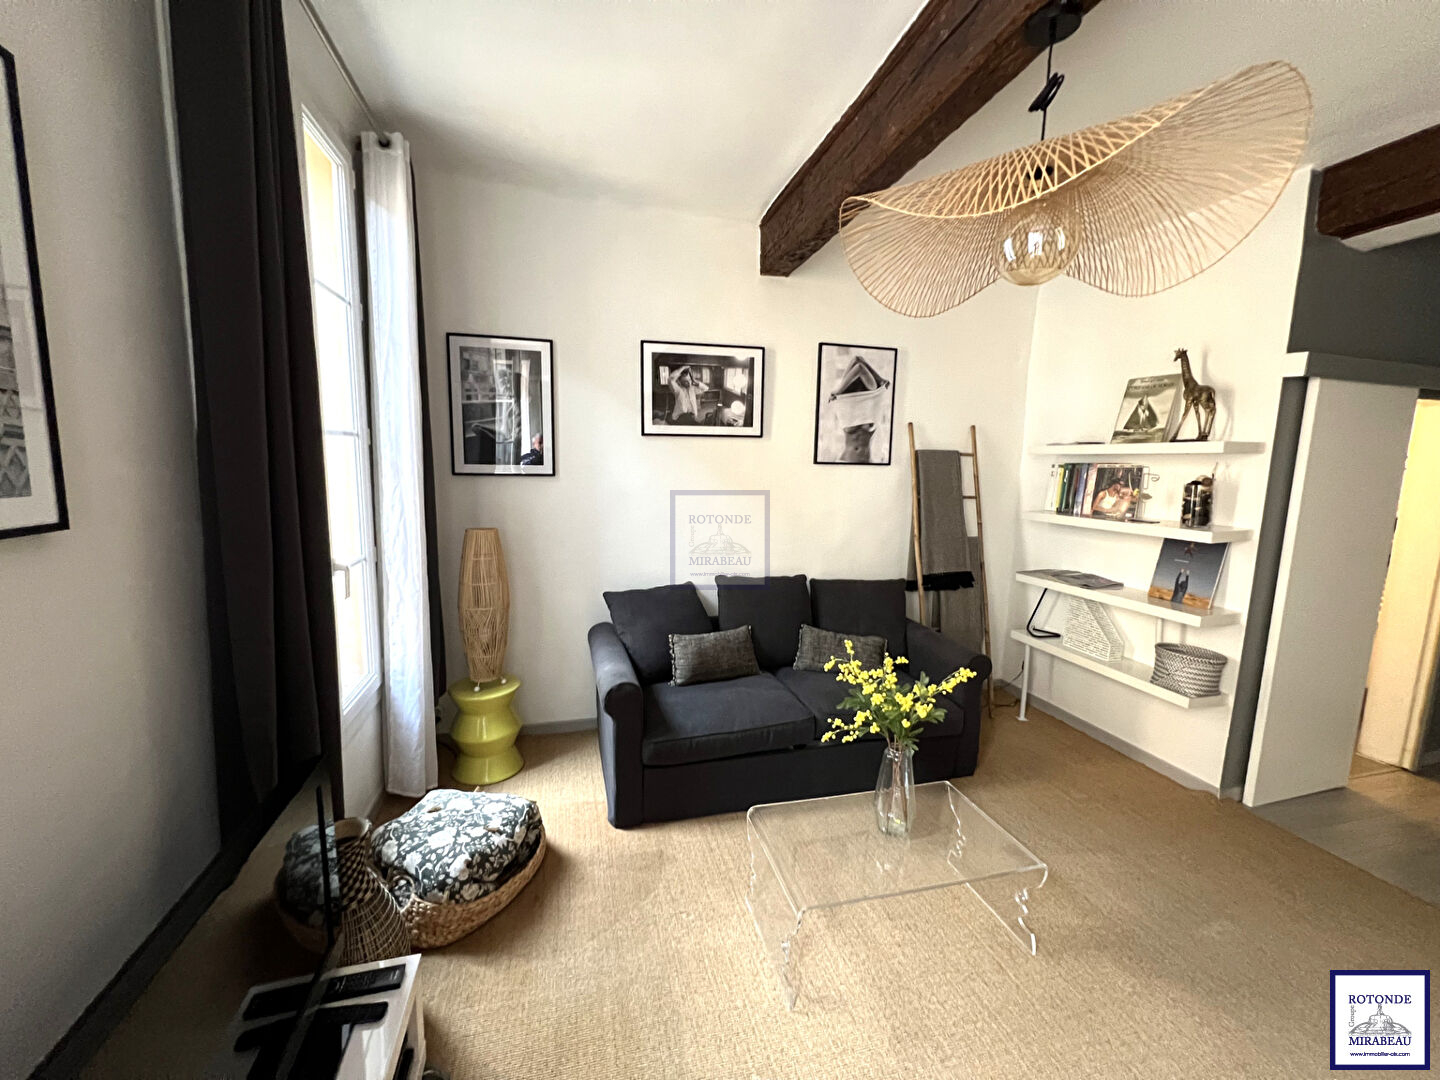 Vente Appartement AIX EN PROVENCE surface habitable de 26.06 m²